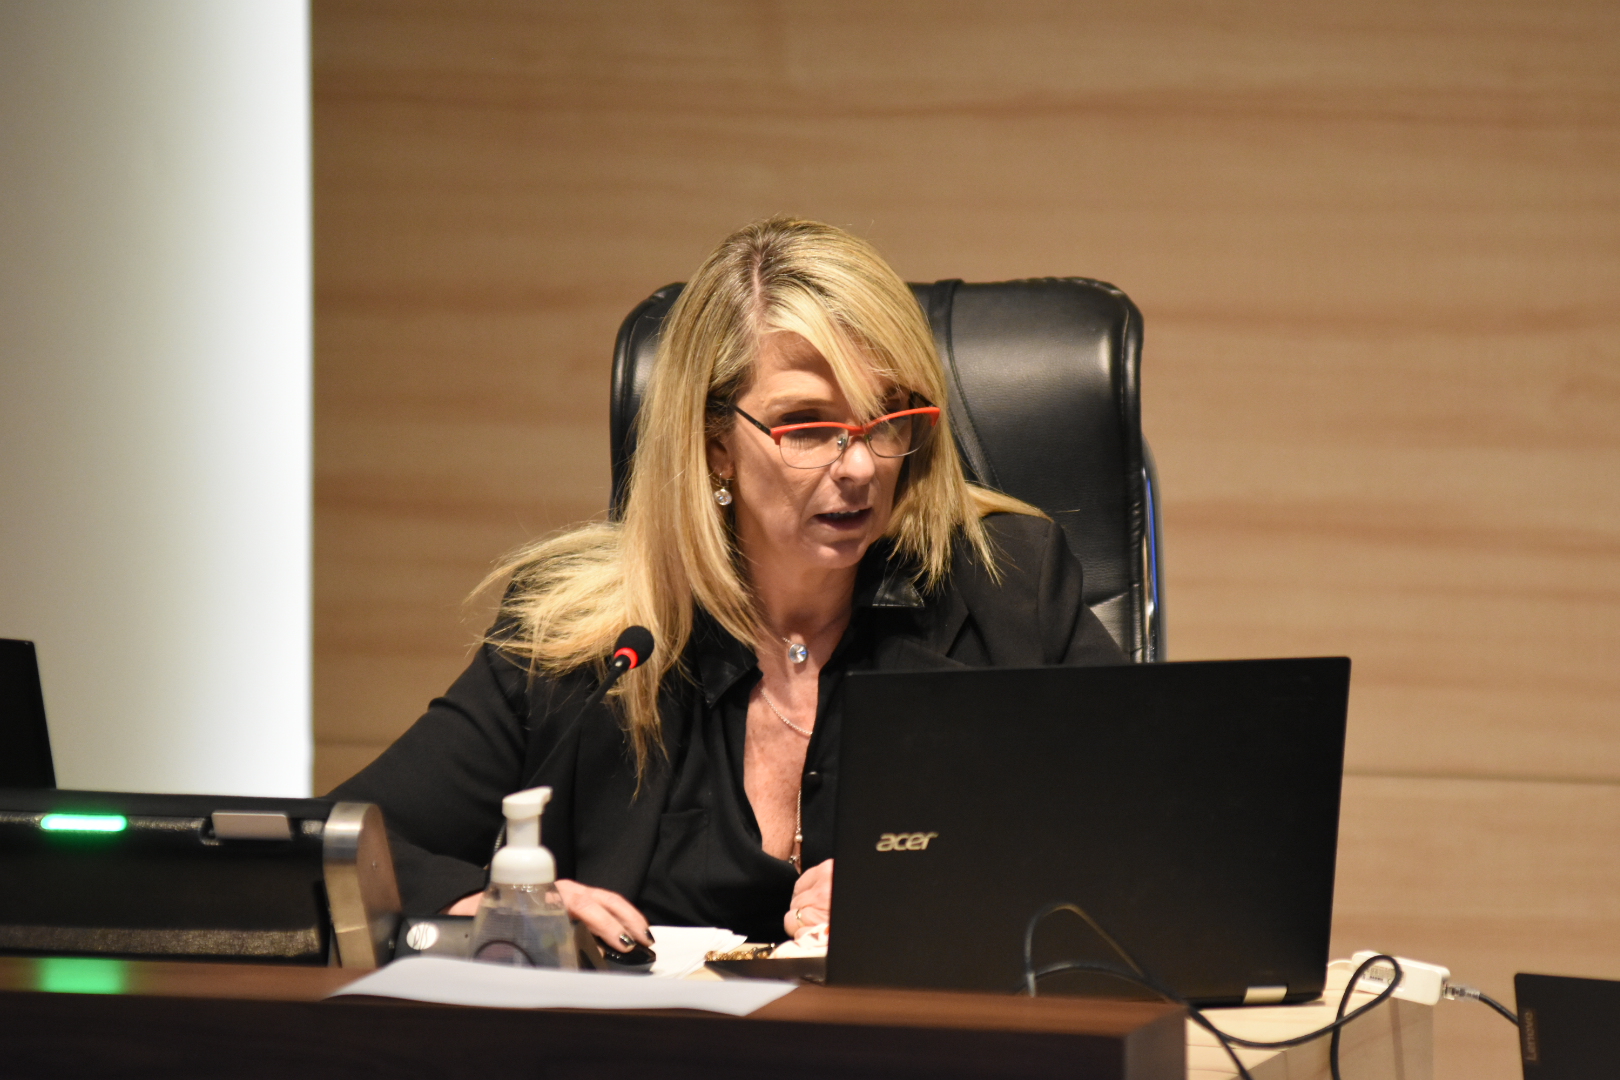 La presidenta María Eugenia Schmuck presidiendo la sesión virtual con su computadora desde el recinto